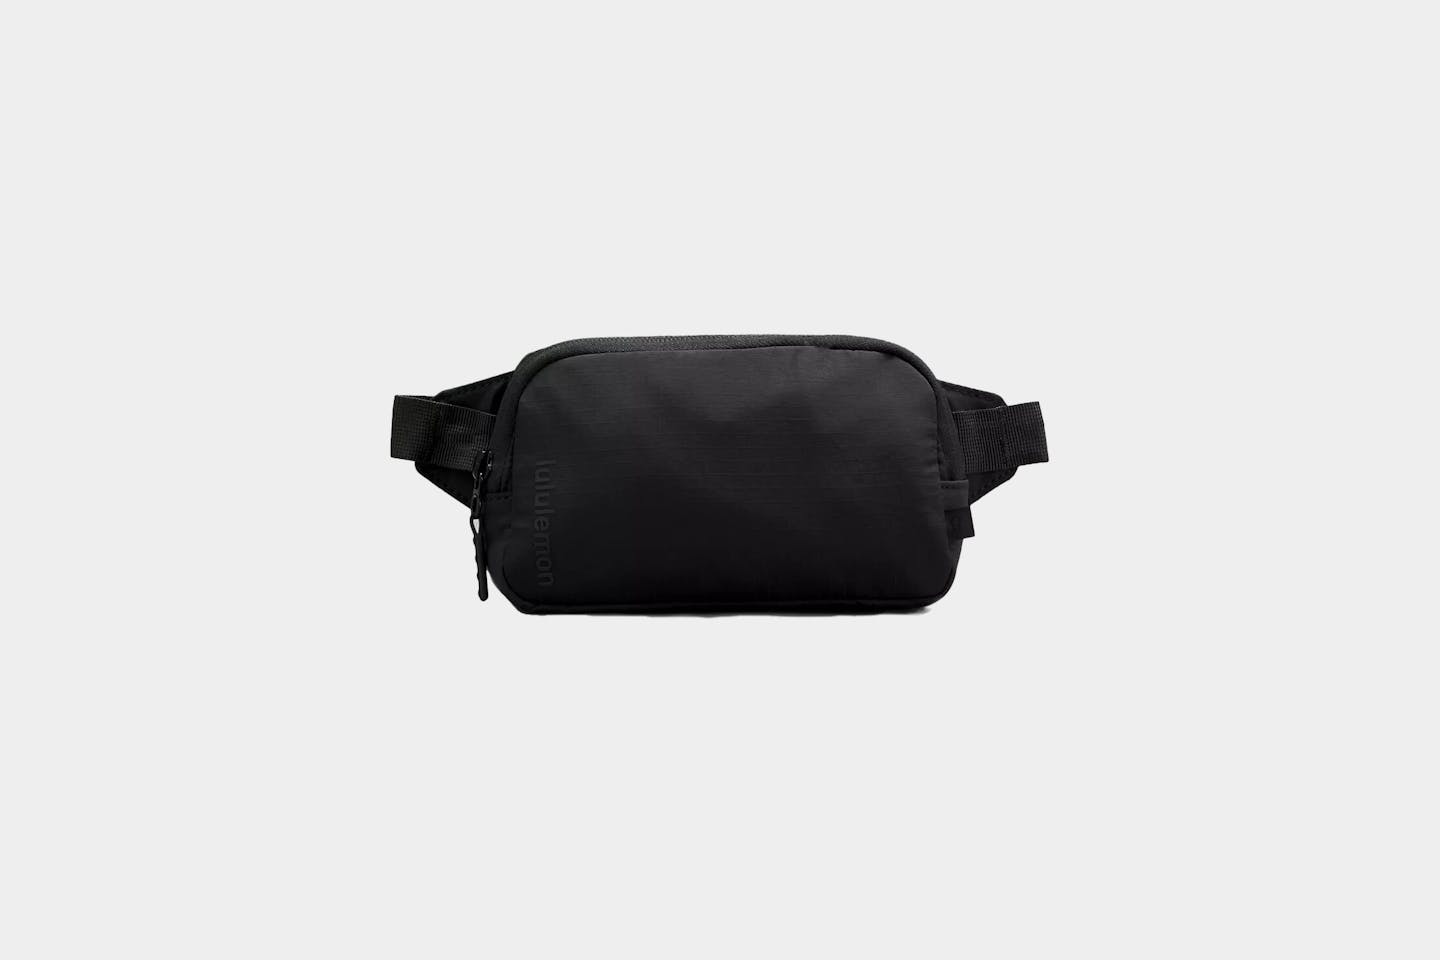 lululemon Mini Belt Bag Review | Pack Hacker